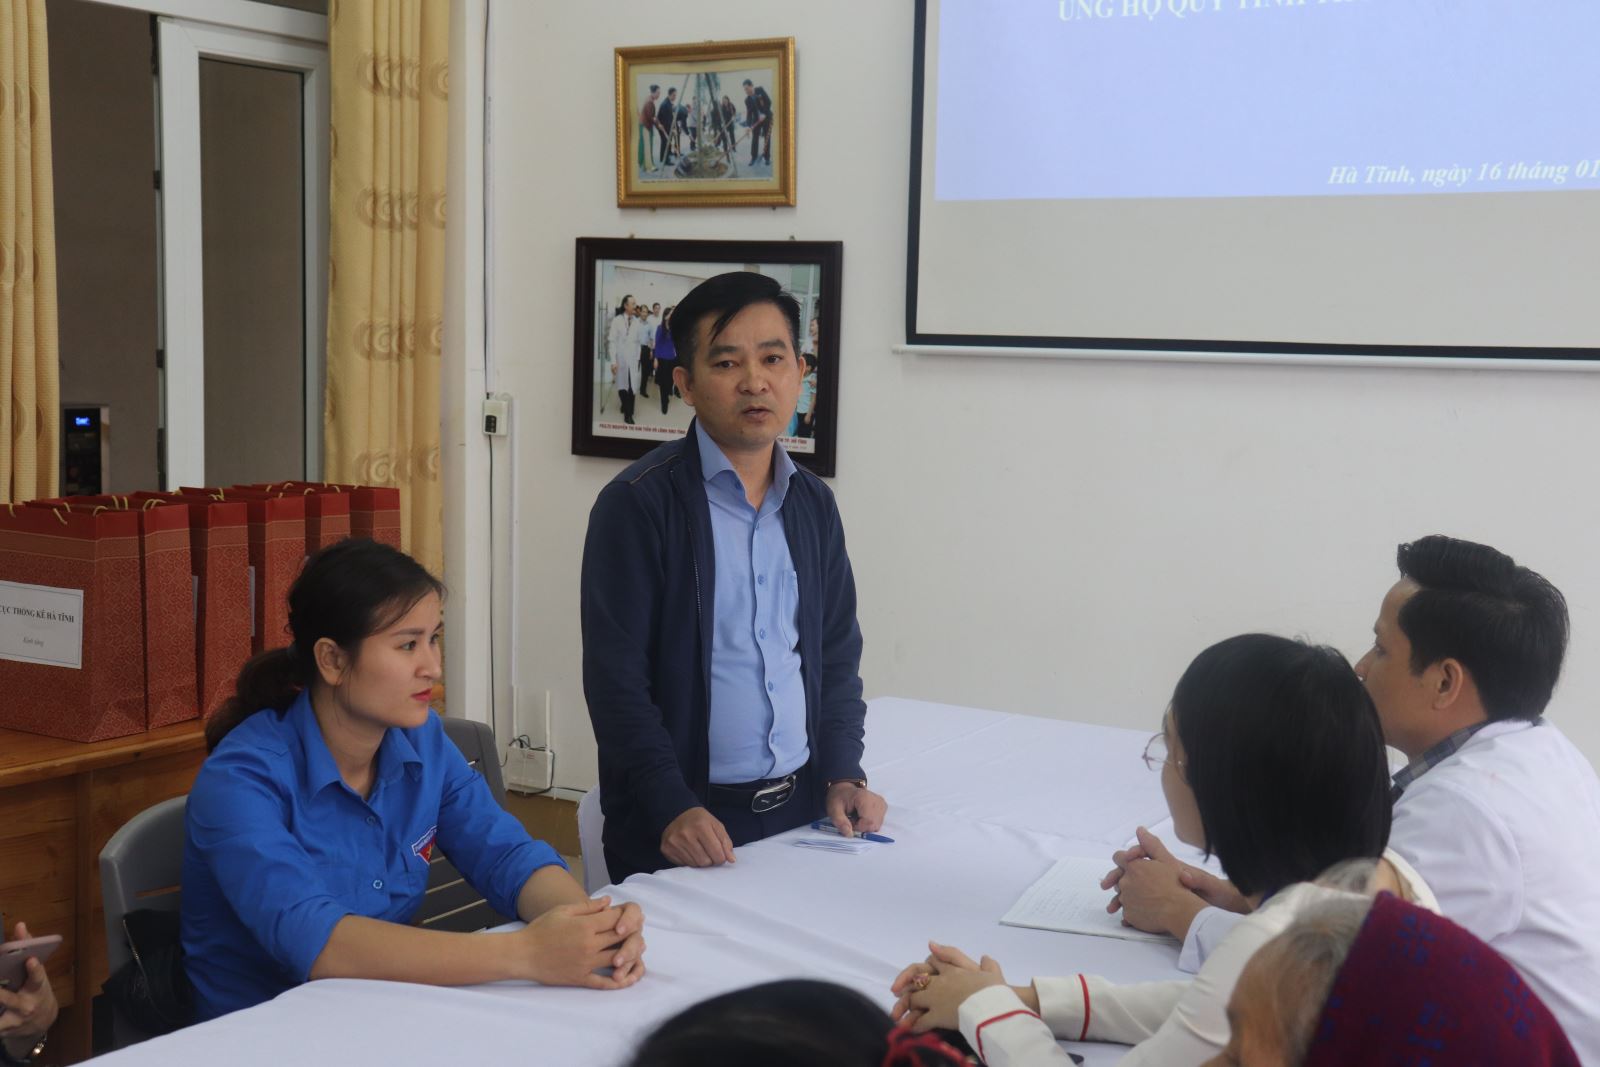  Đồng chí Trần Hoài Nam – Phó bí thư chi bộ Cục thống kê Hà Tĩnh gửi lời cảm ơn đến Bệnh viện đa khoa thành phố đã làm cầu nối để các nhà hảo tâm có cơ hội tiếp cận và giúp đỡ những bệnh nhân có hoàn cảnh đặc biệt.